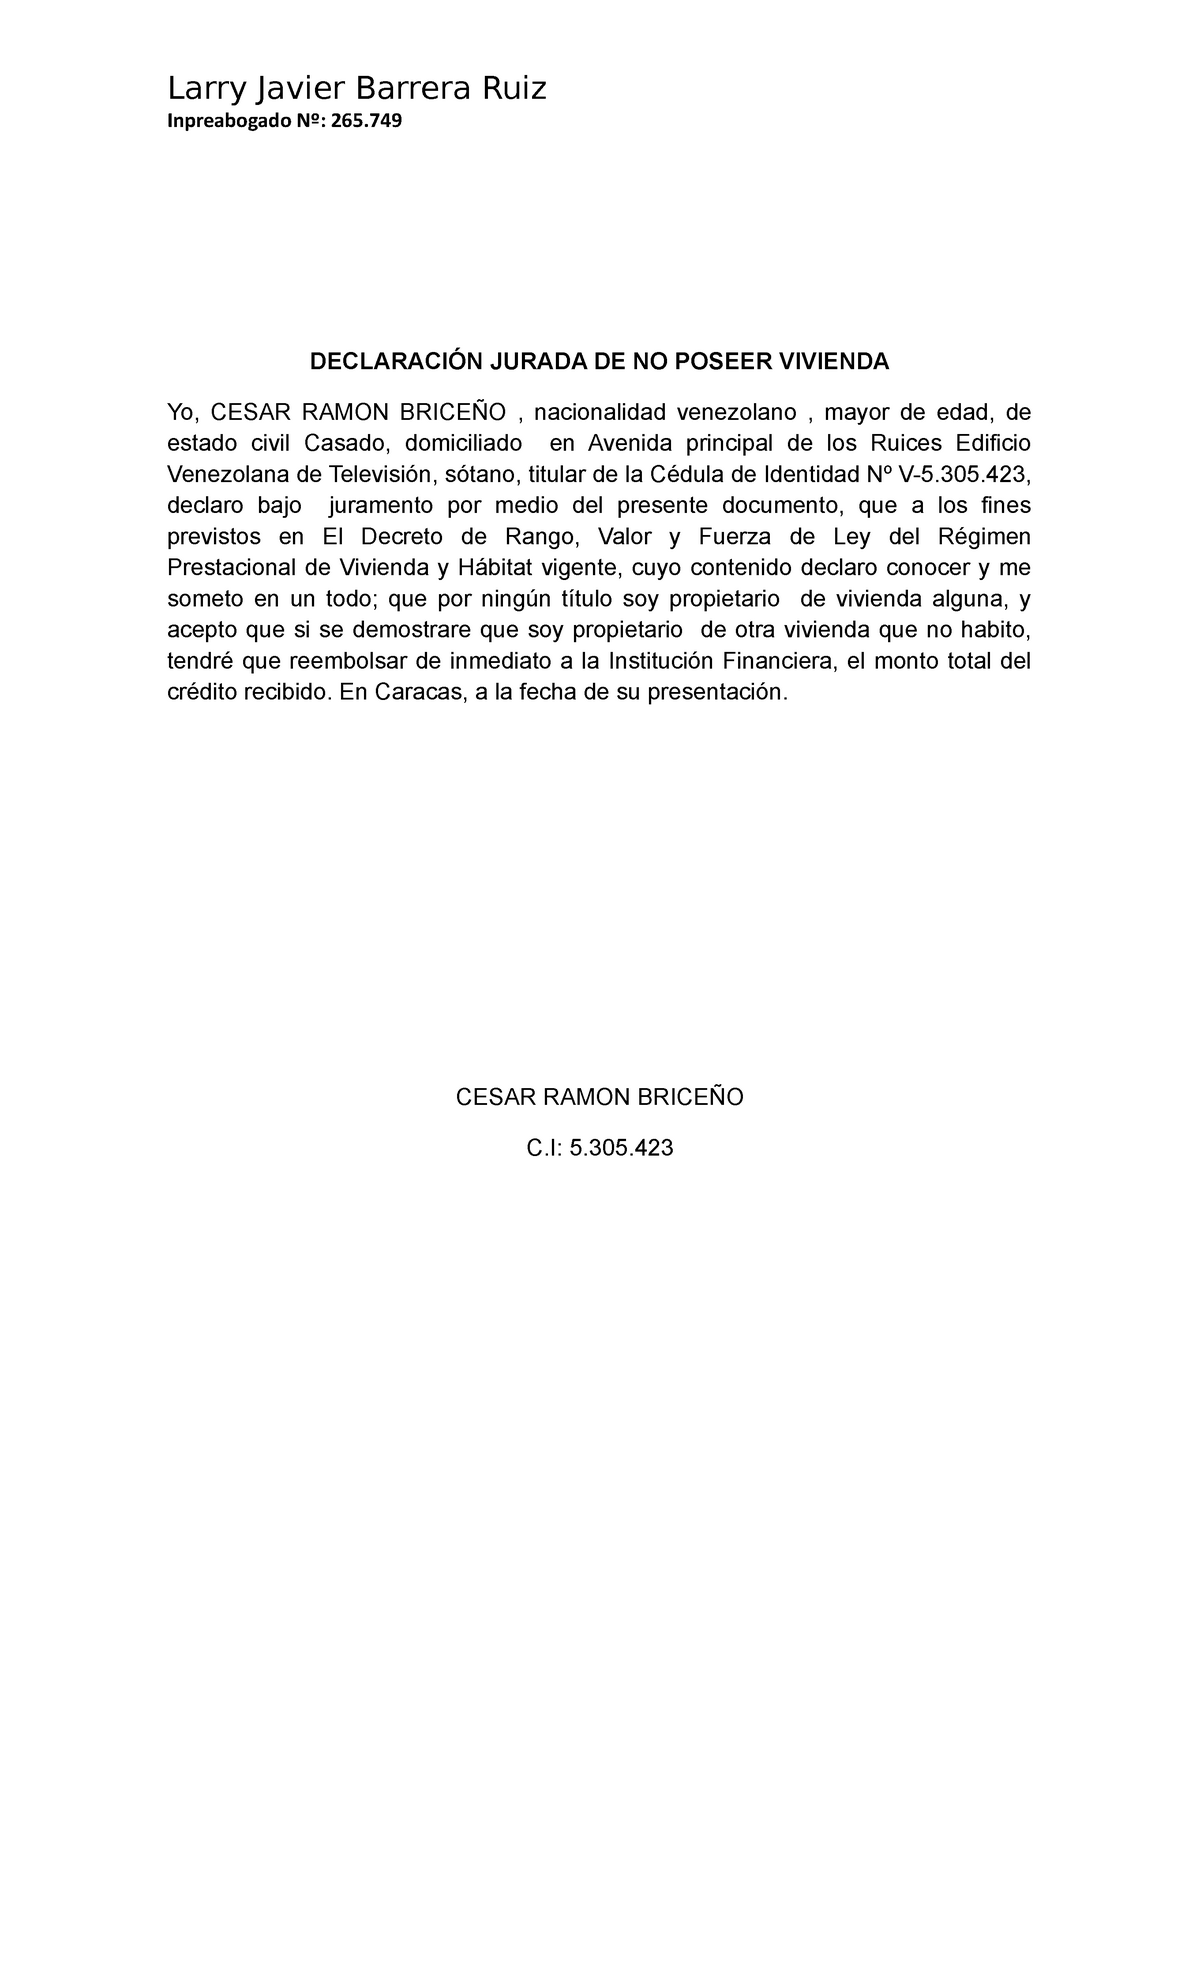 Declaración Jurada DE NO Poseer Vivienda - Larry Javier Barrera Ruiz  Inpreabogado Nº: 265. - Studocu